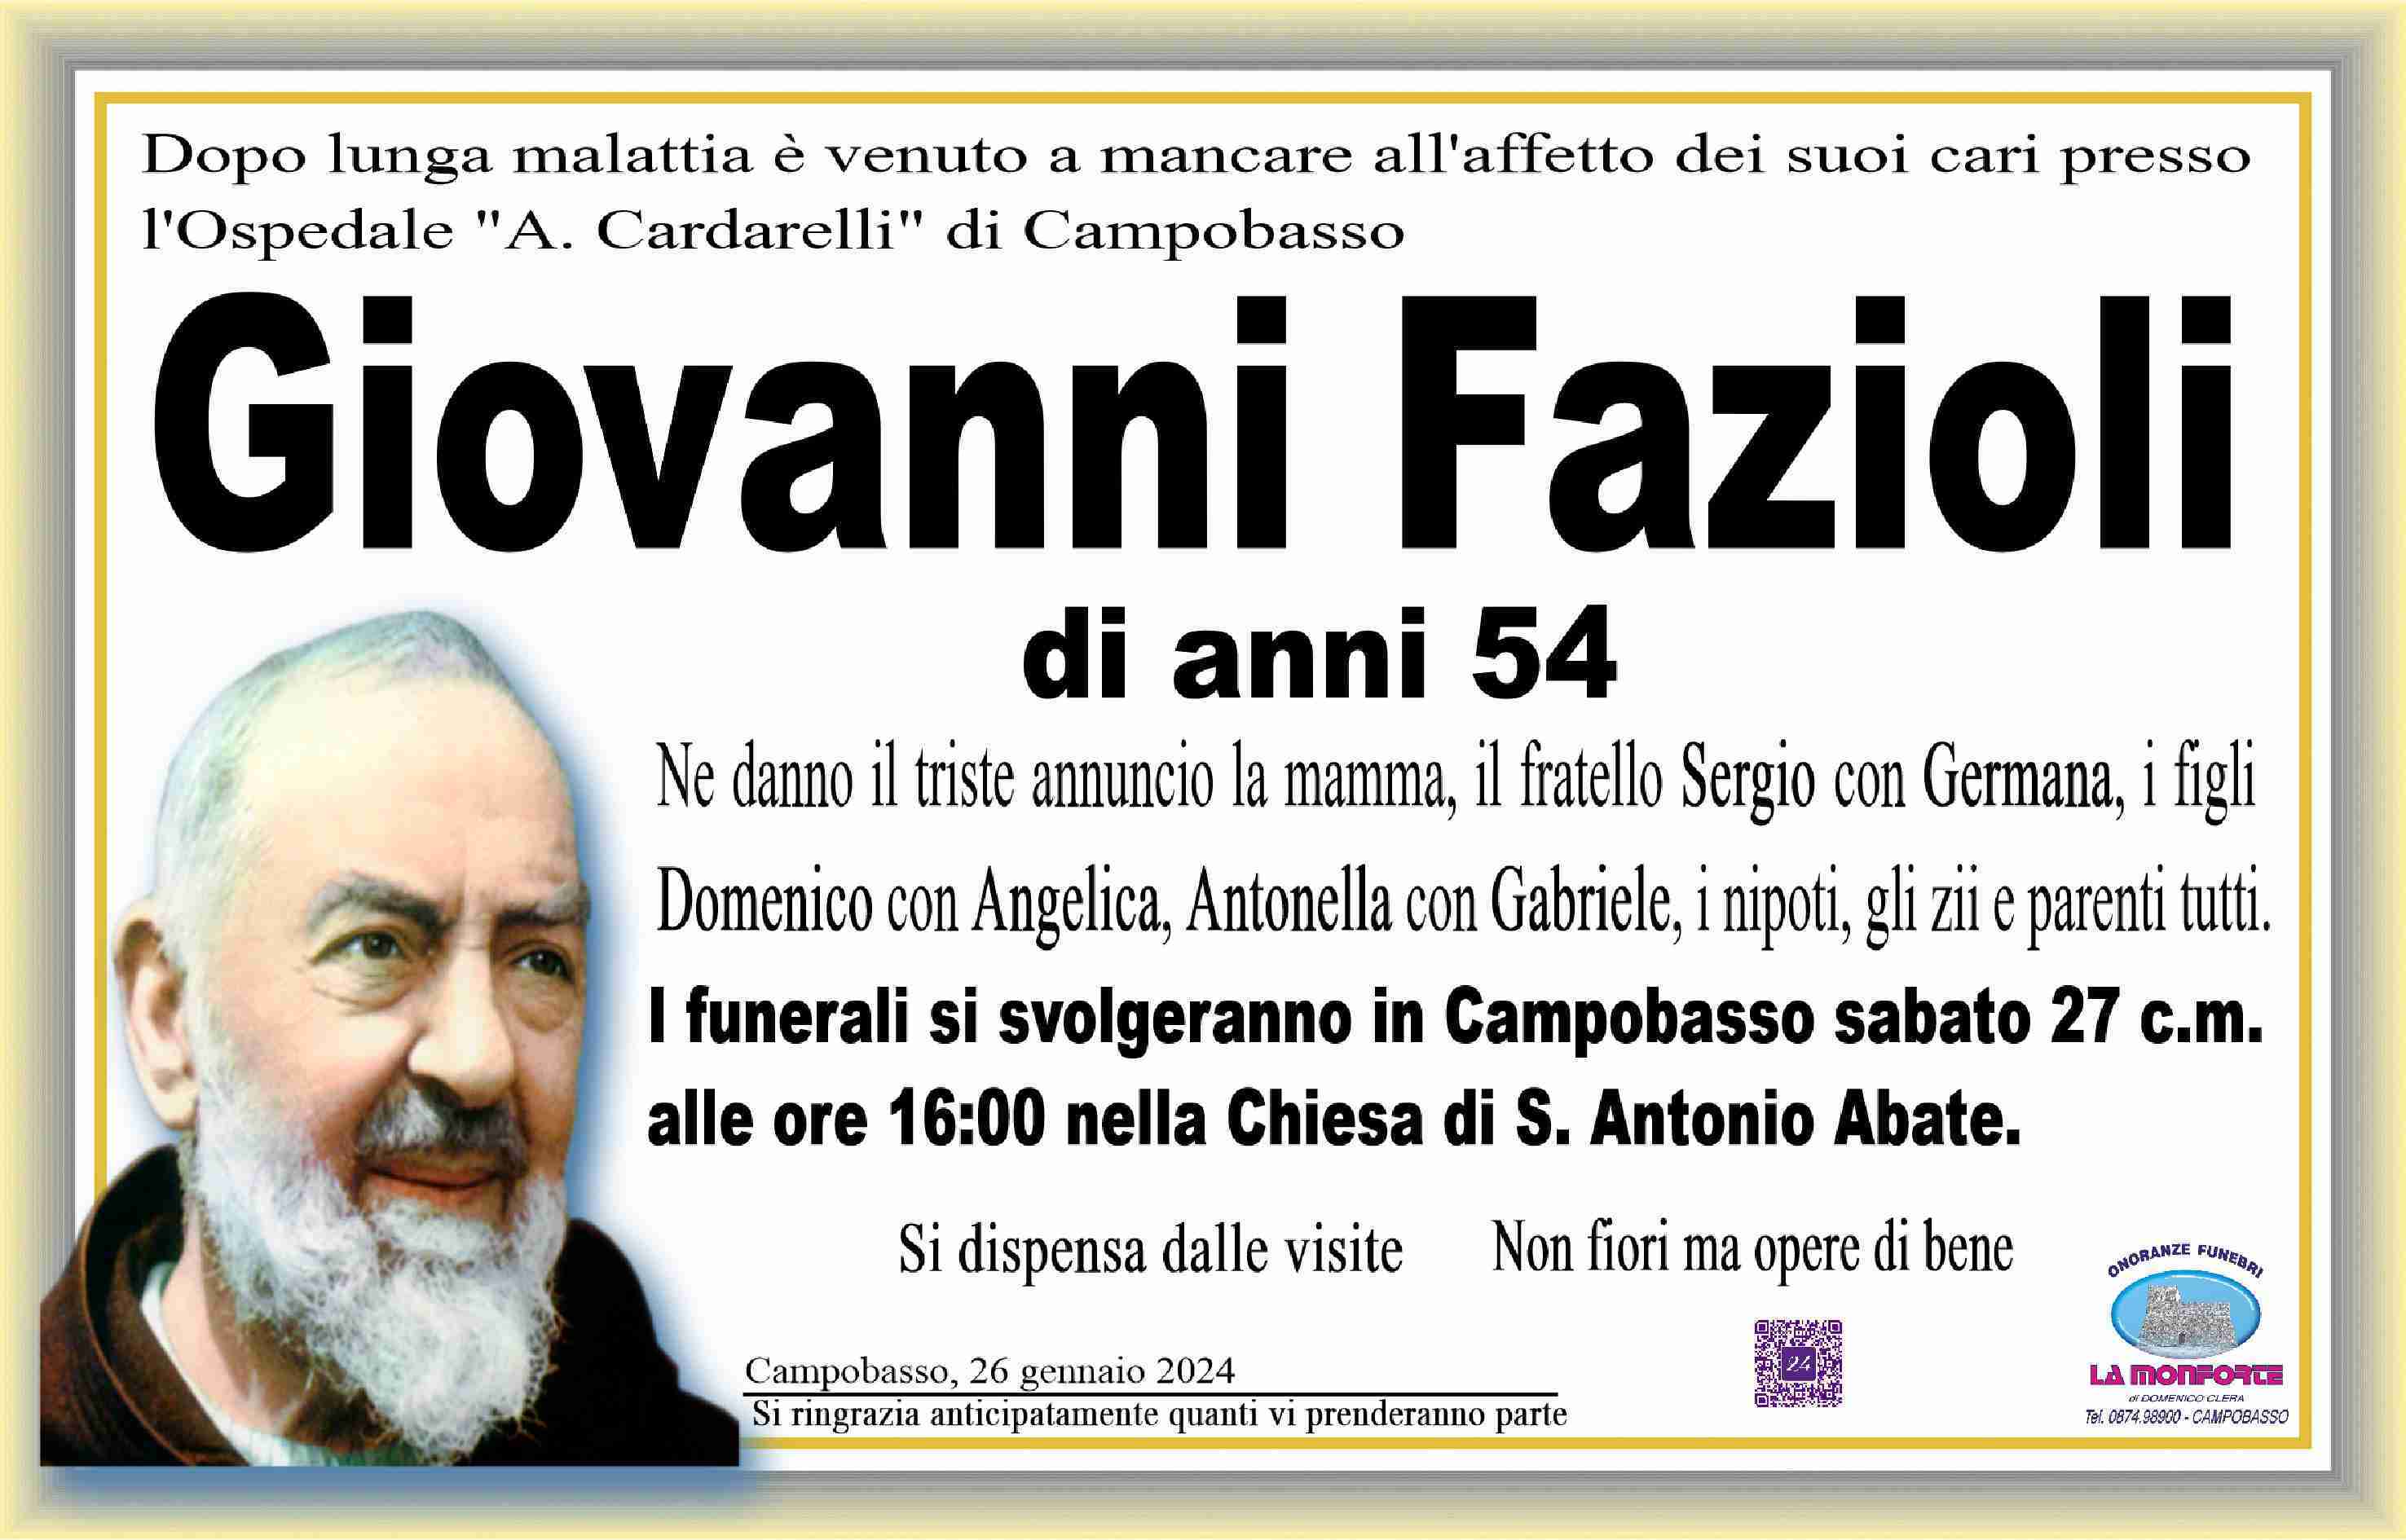 Giovanni Fazioli